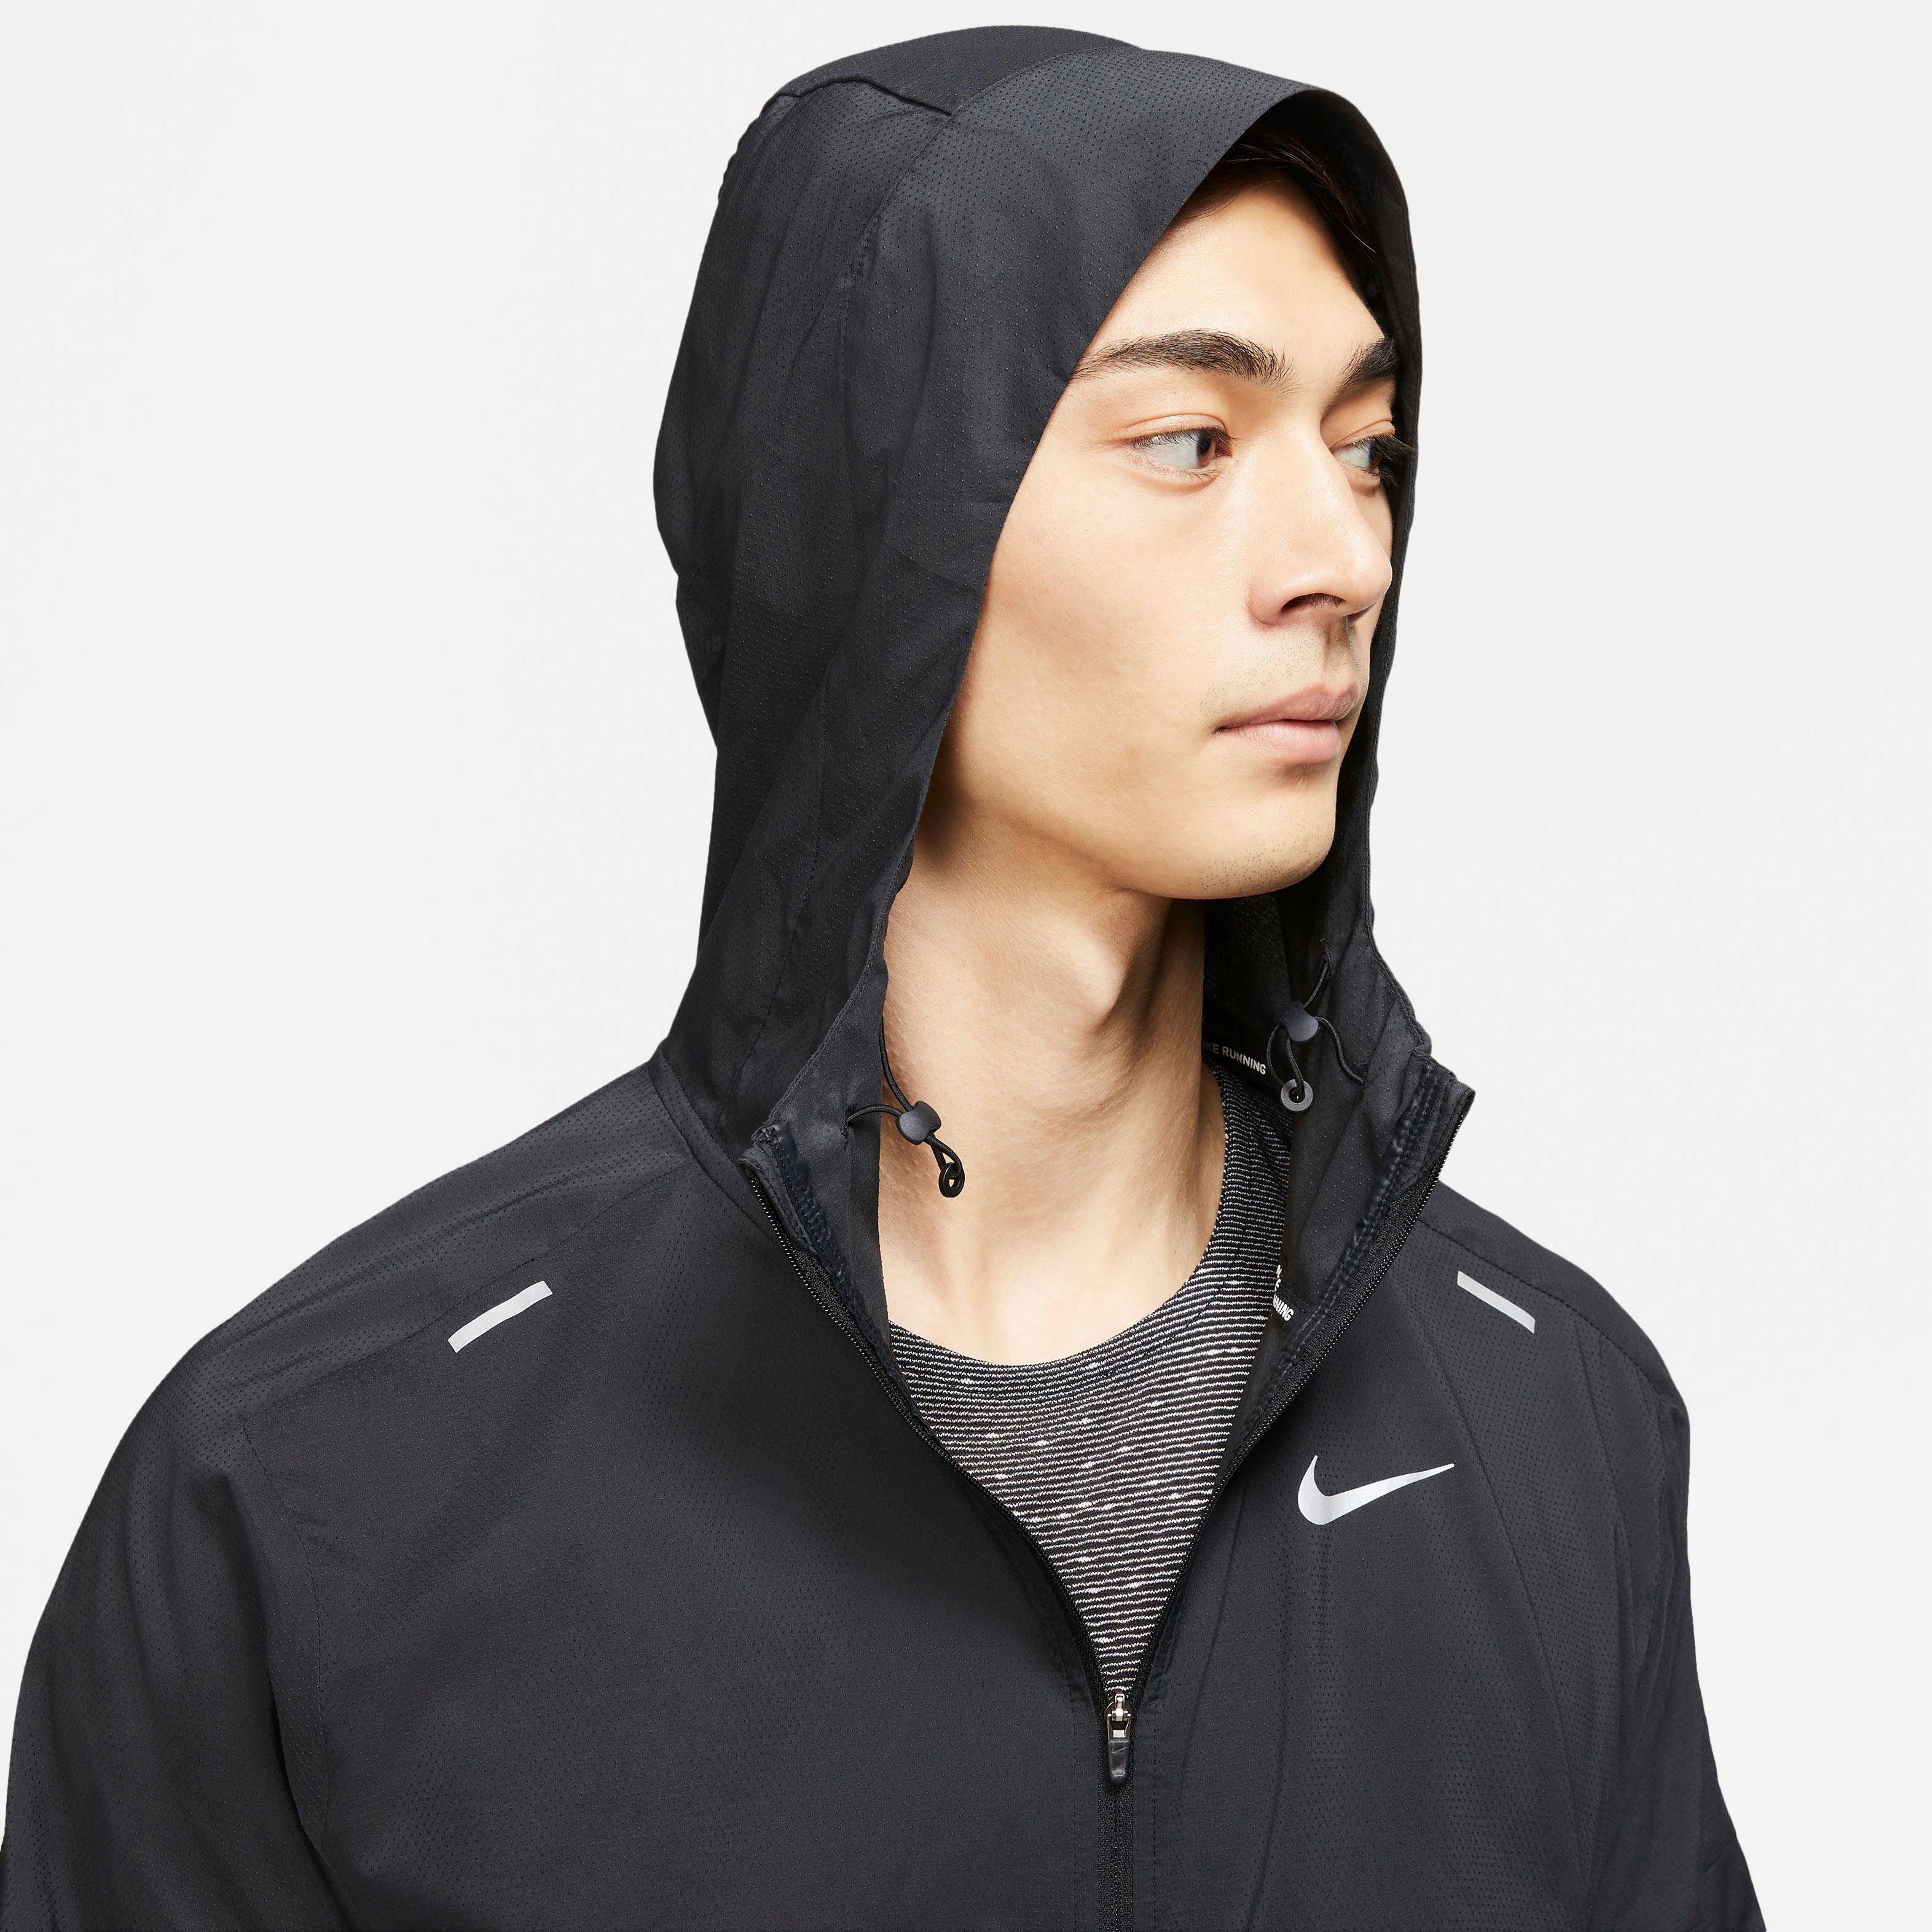 Men's Laufjacke schwarz Running Jacket Nike Windrunner